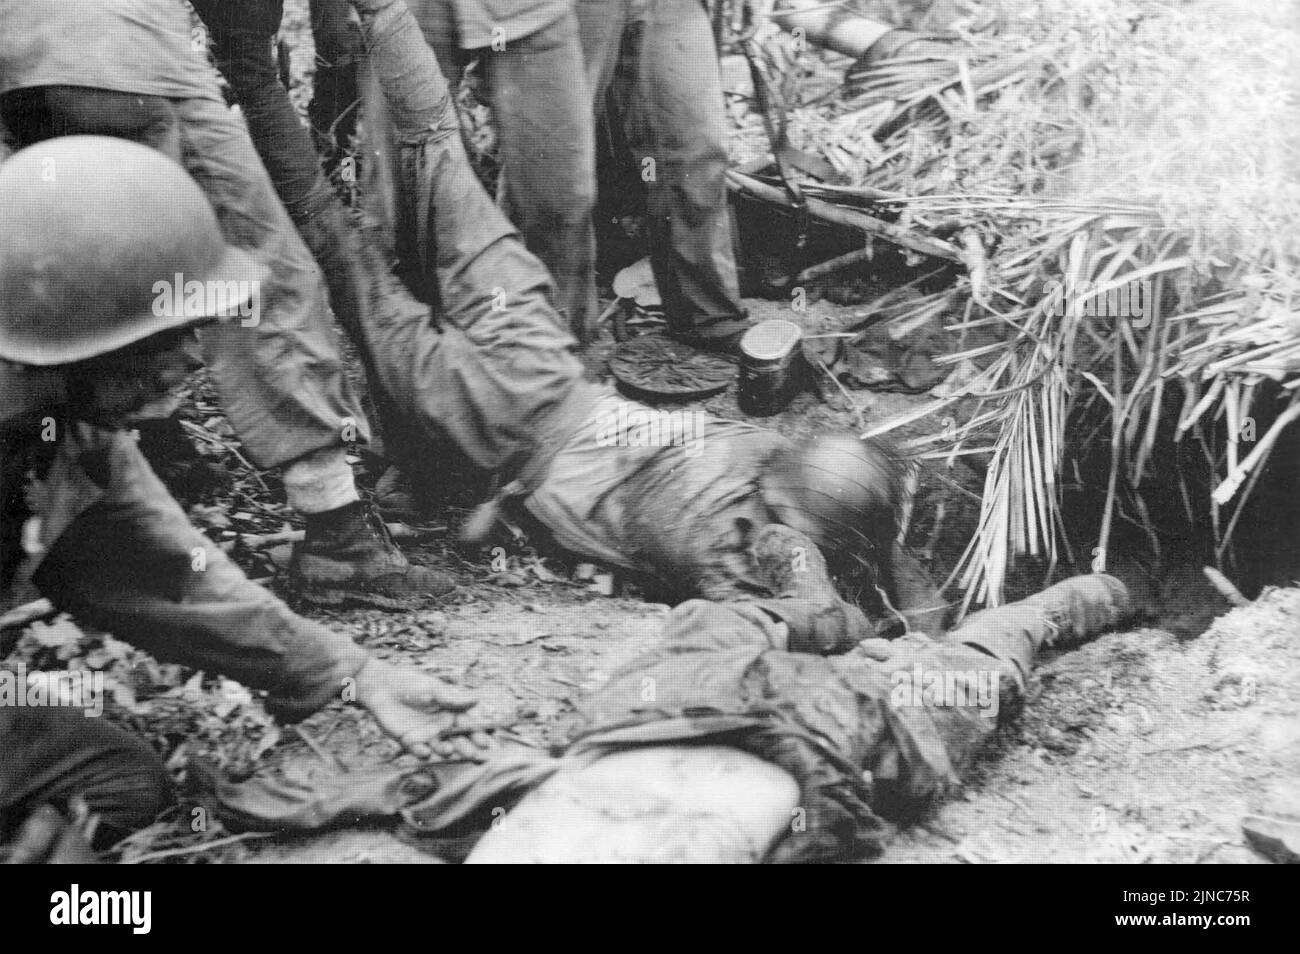 Los marines de EE.UU. Arrastran los cadáveres de soldados japoneses de su búnker en el área de Point Cruz después de la batalla a principios de noviembre durante la ofensiva Matinakau, que fue una batalla en la Campaña Guadalcanal. Foto de stock